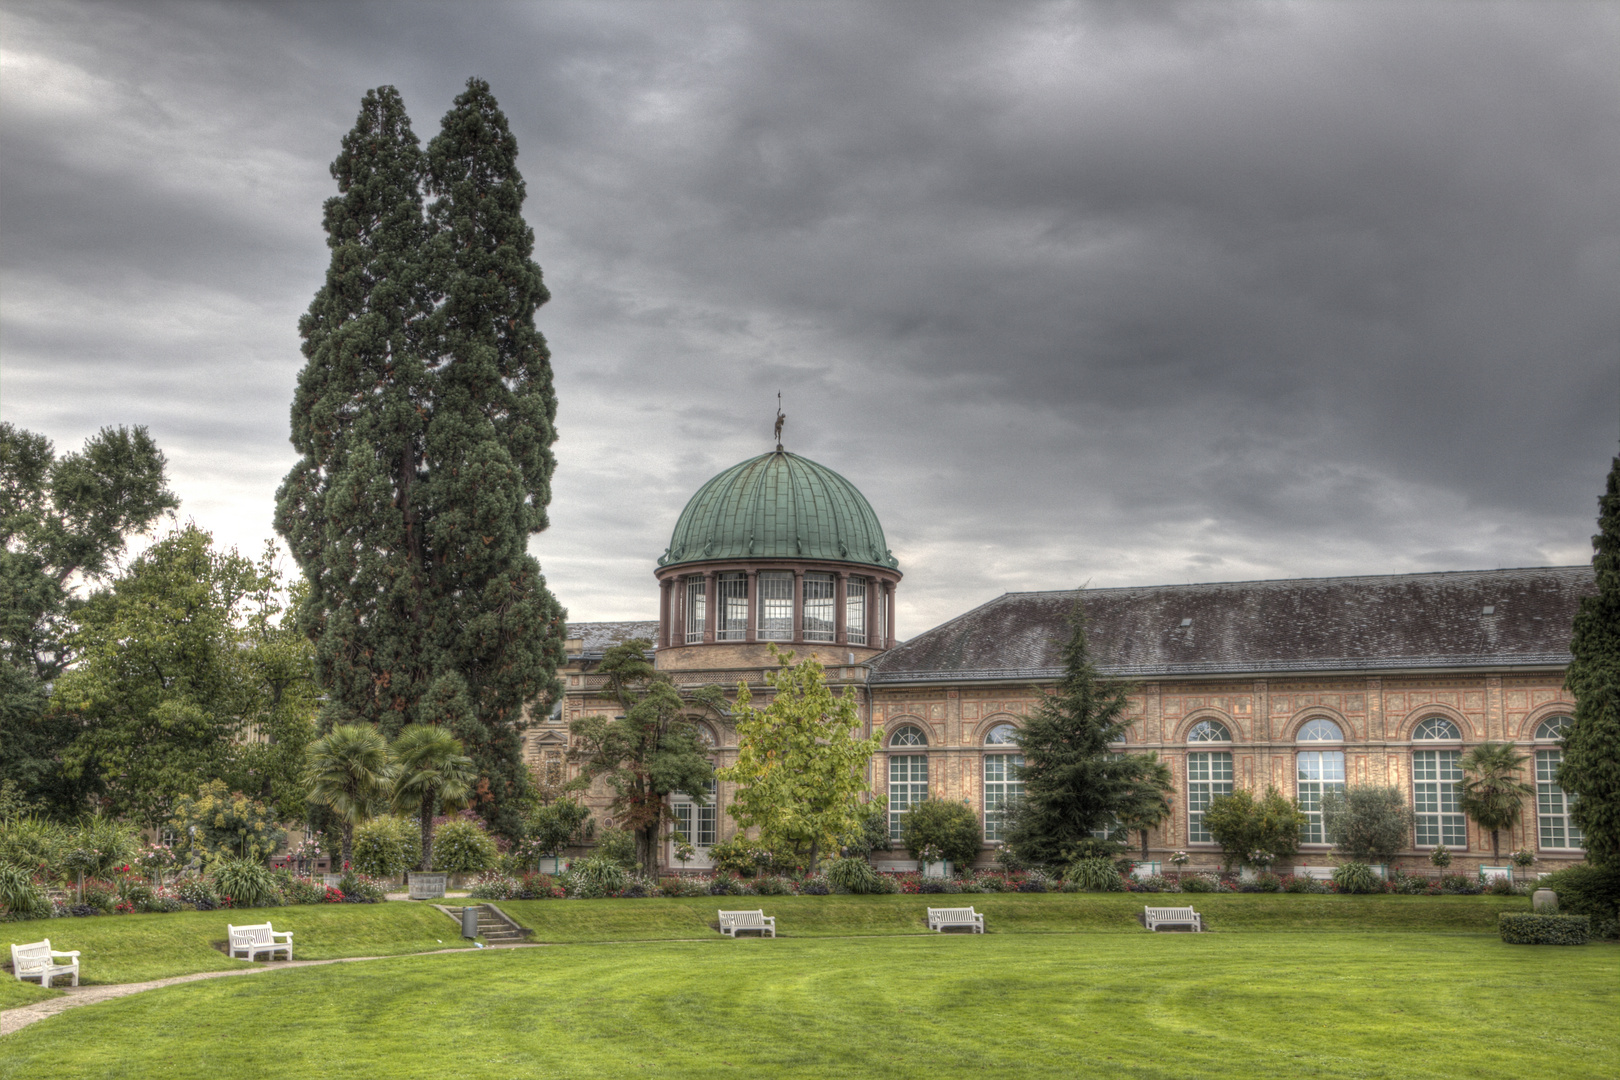 Botanischer Garten Karlsruhe - Orangerie und Staatliche Kunsthalle in HDR